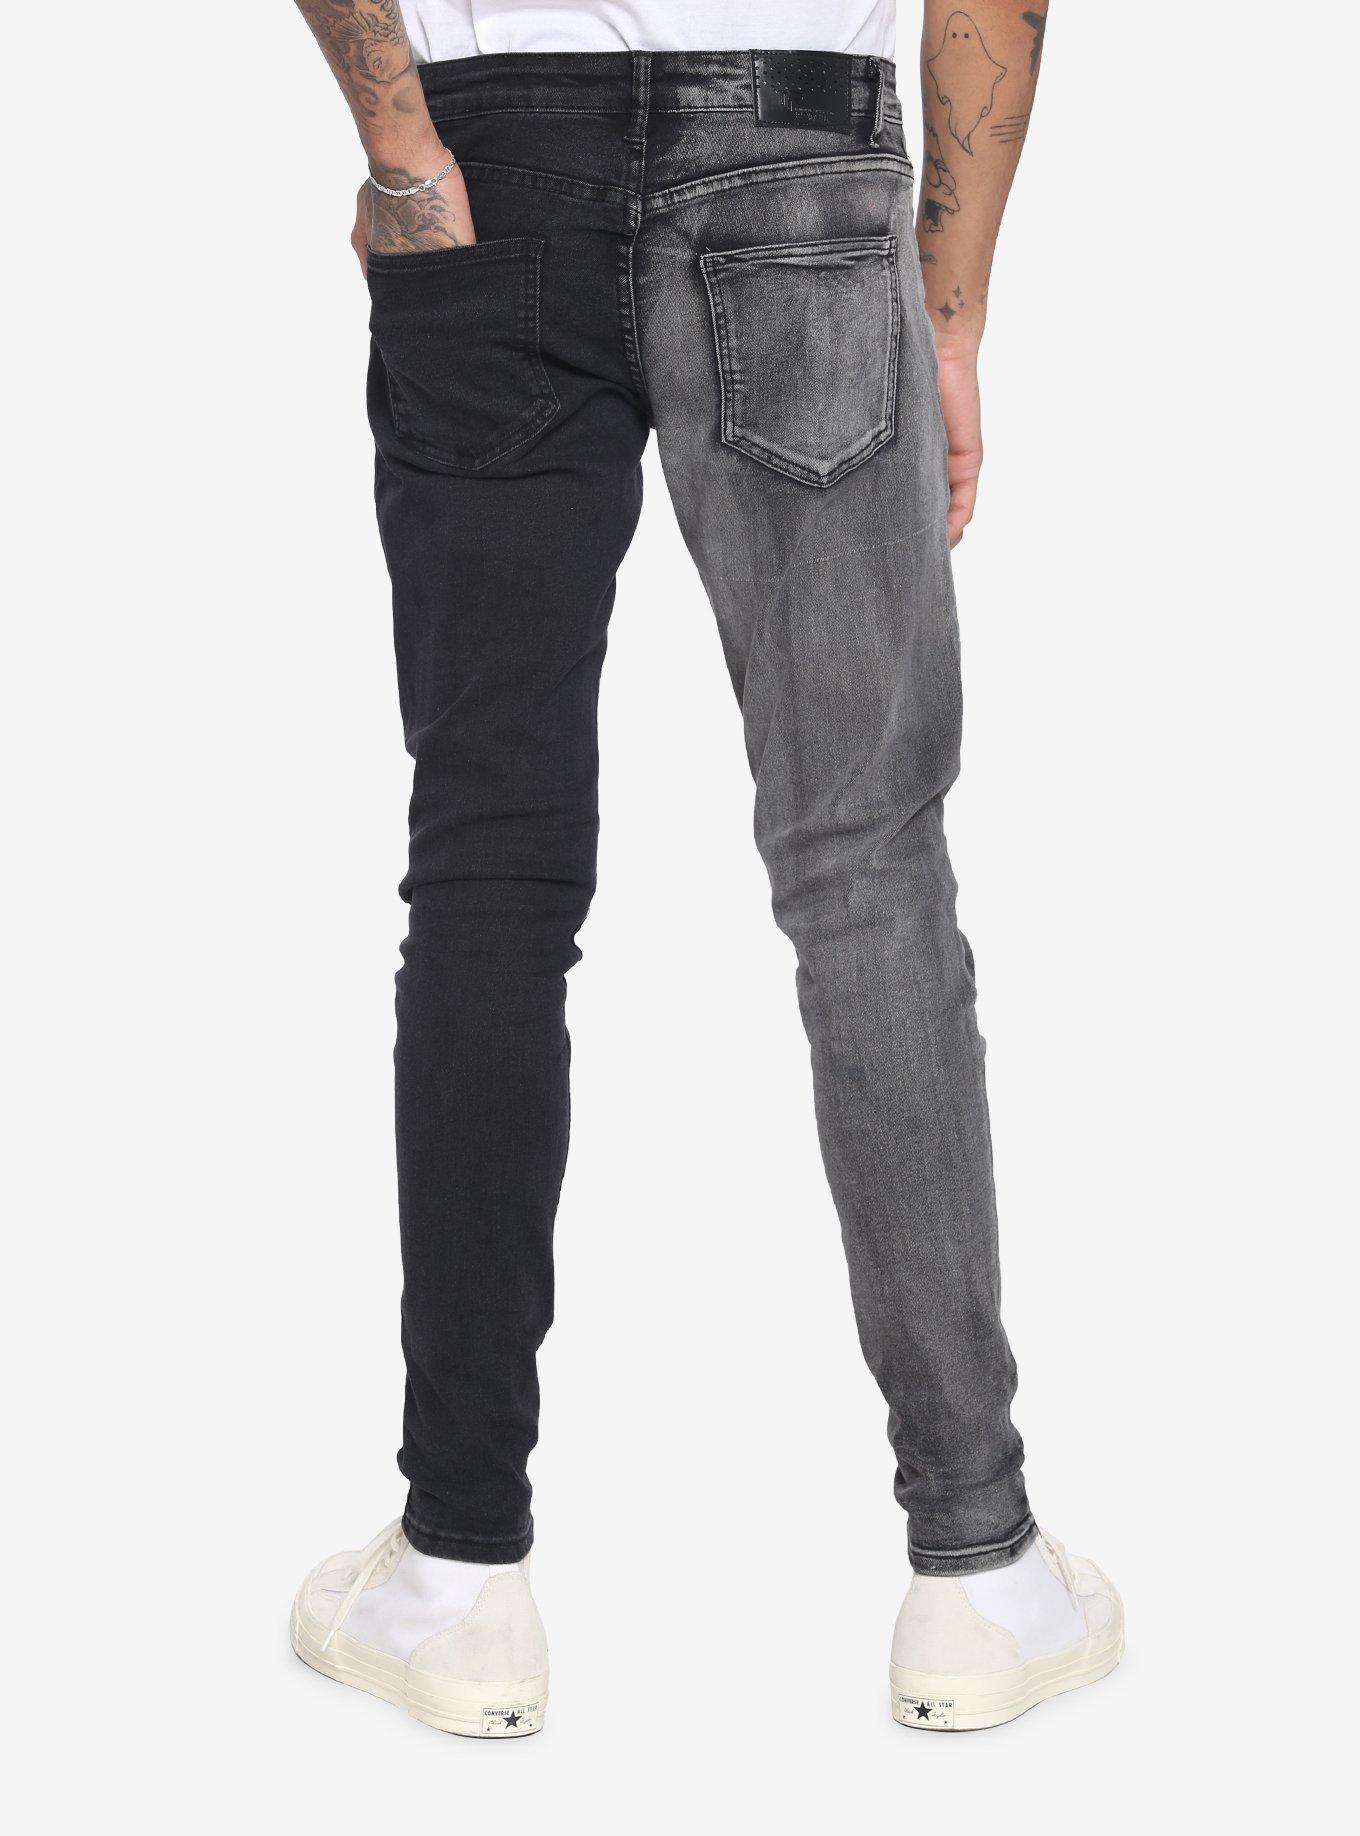 Black & Grey Wash Split Leg Skinny Jeans, BLACK, alternate